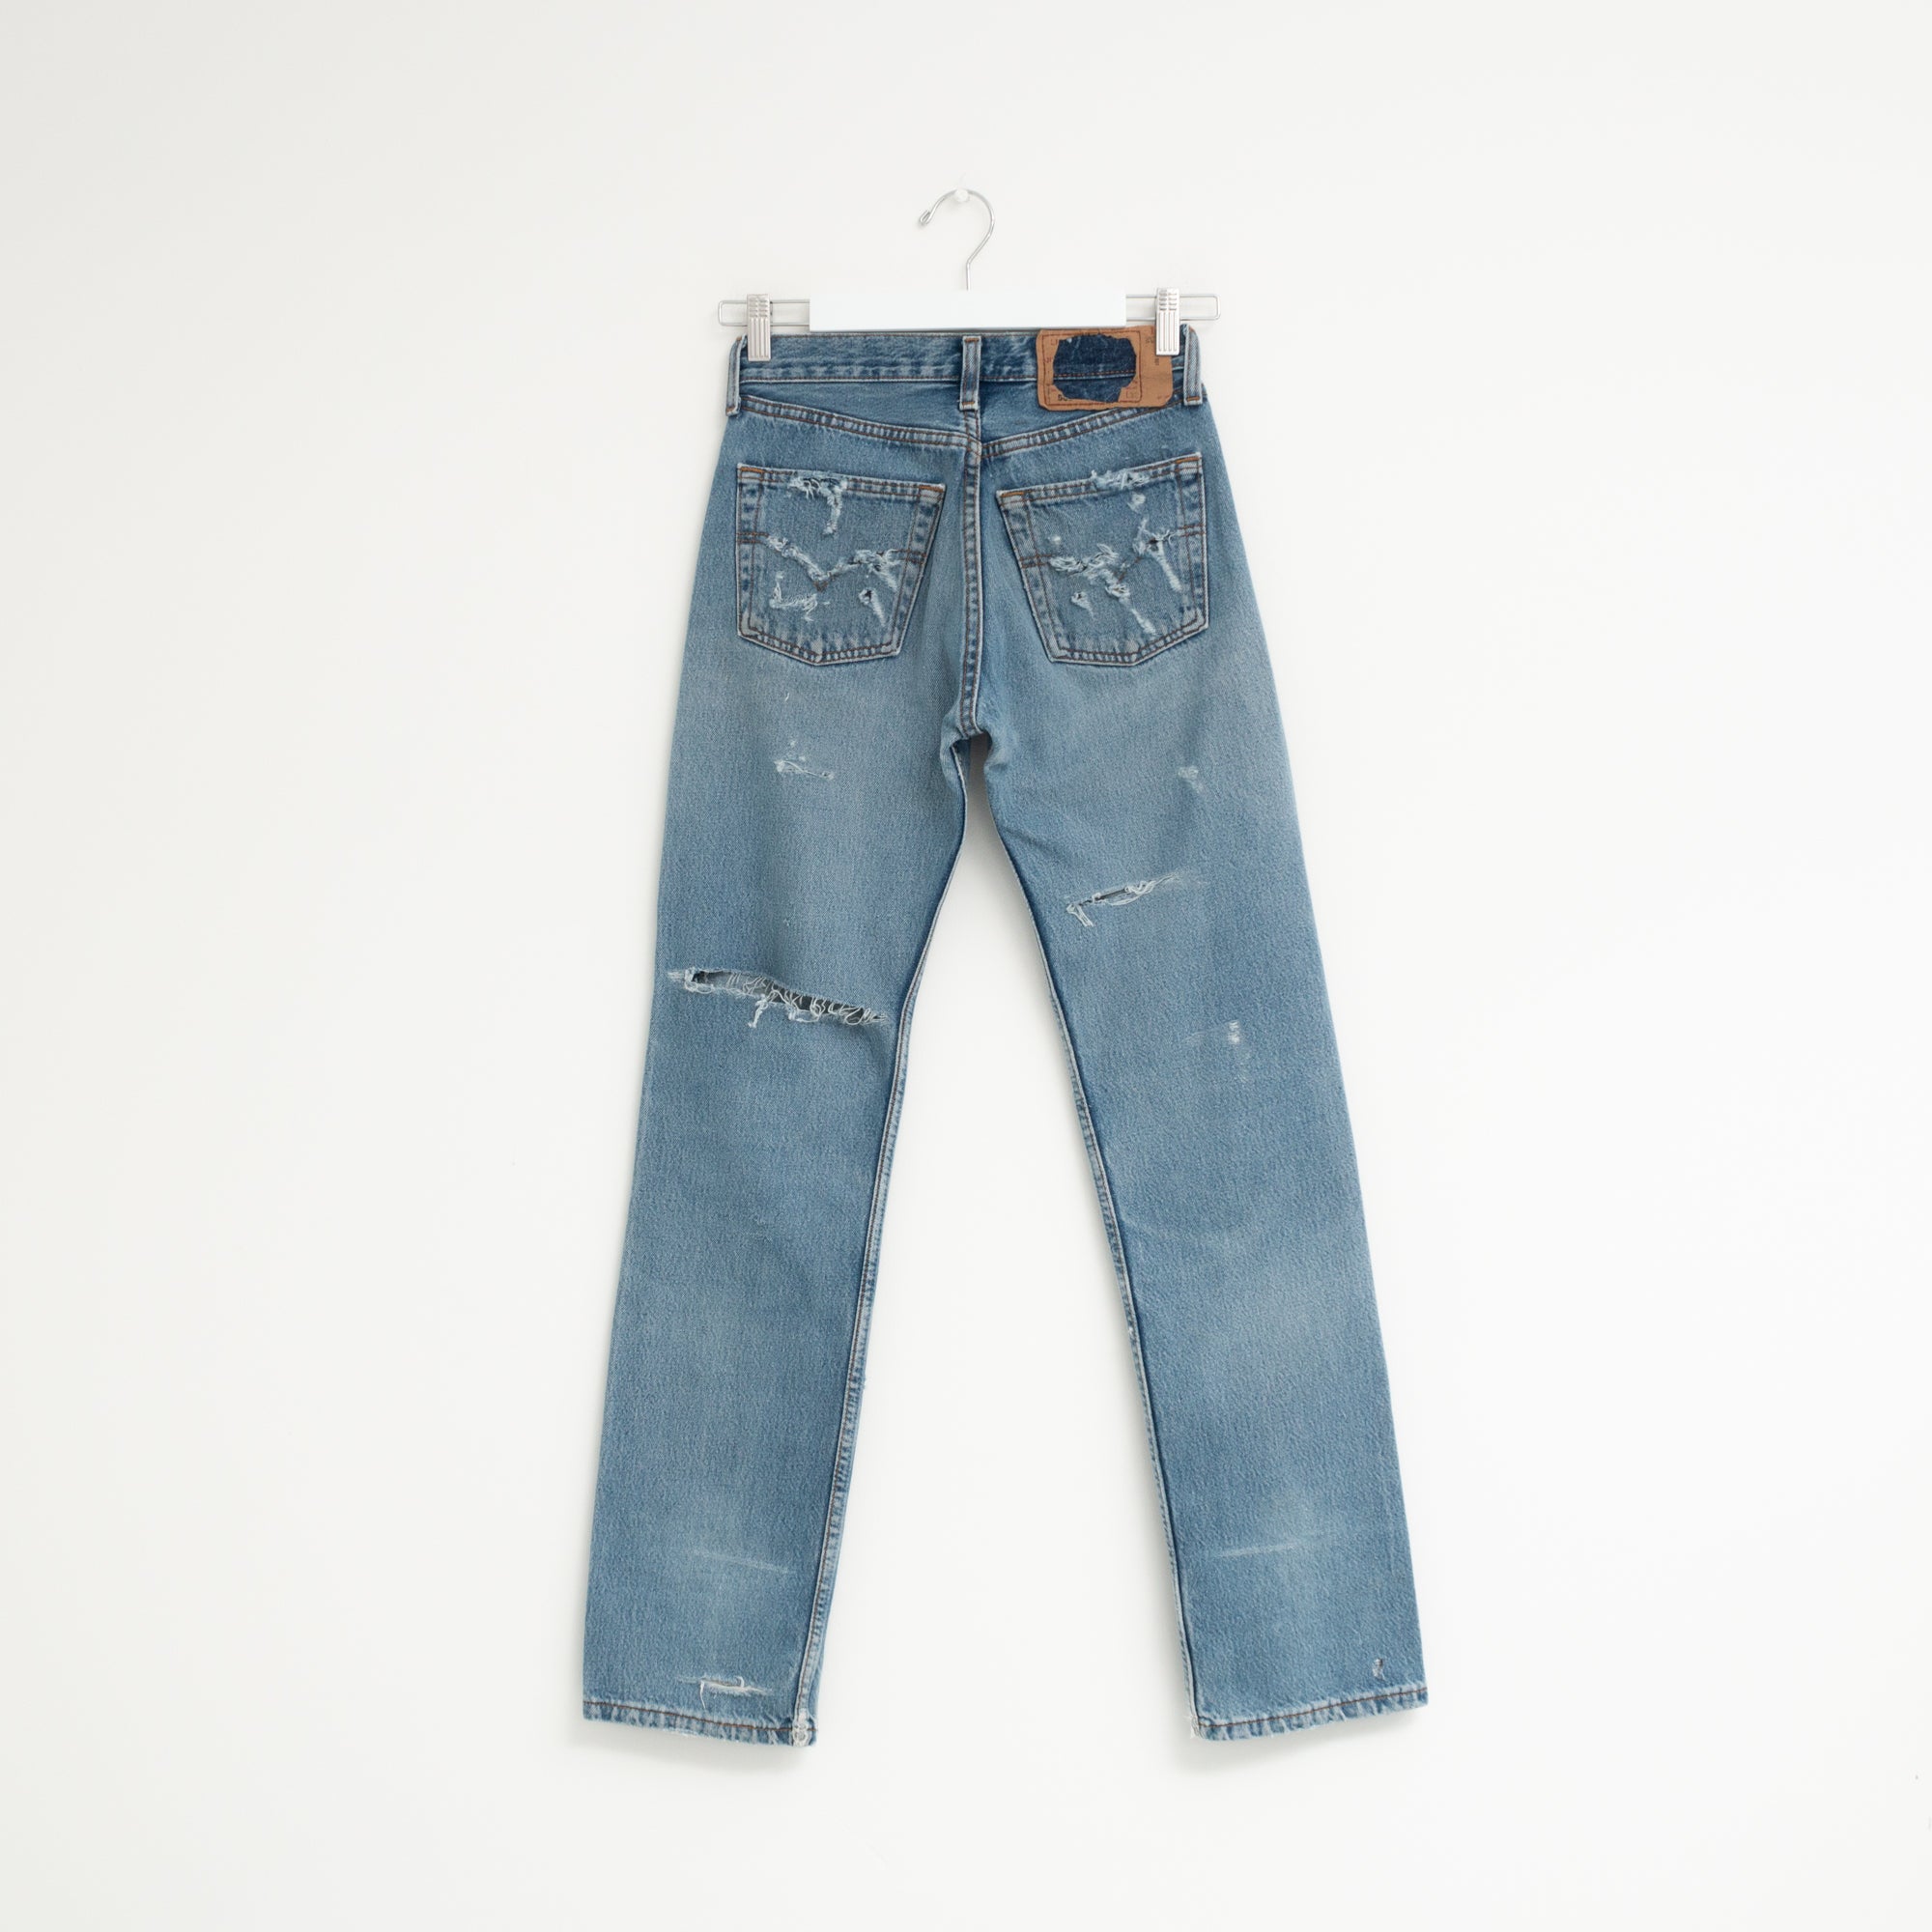 "DISTRESSED" Jeans W26 L31